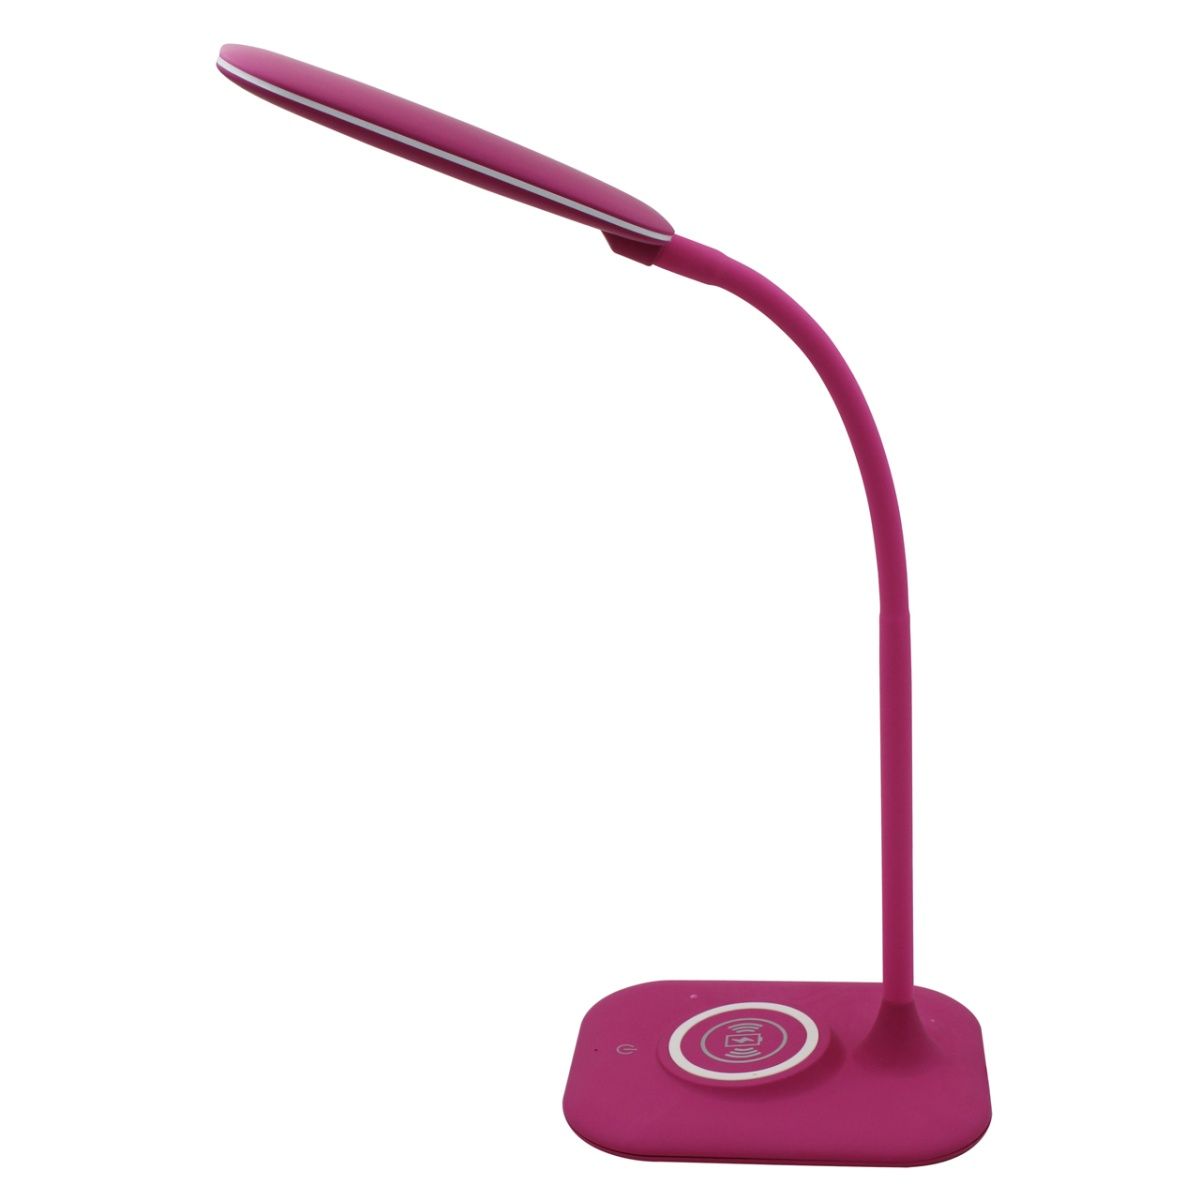 Schreibtischlampe "Ocean" mit eingebautem Drahtlose Qi-Ladegeräte - Pink